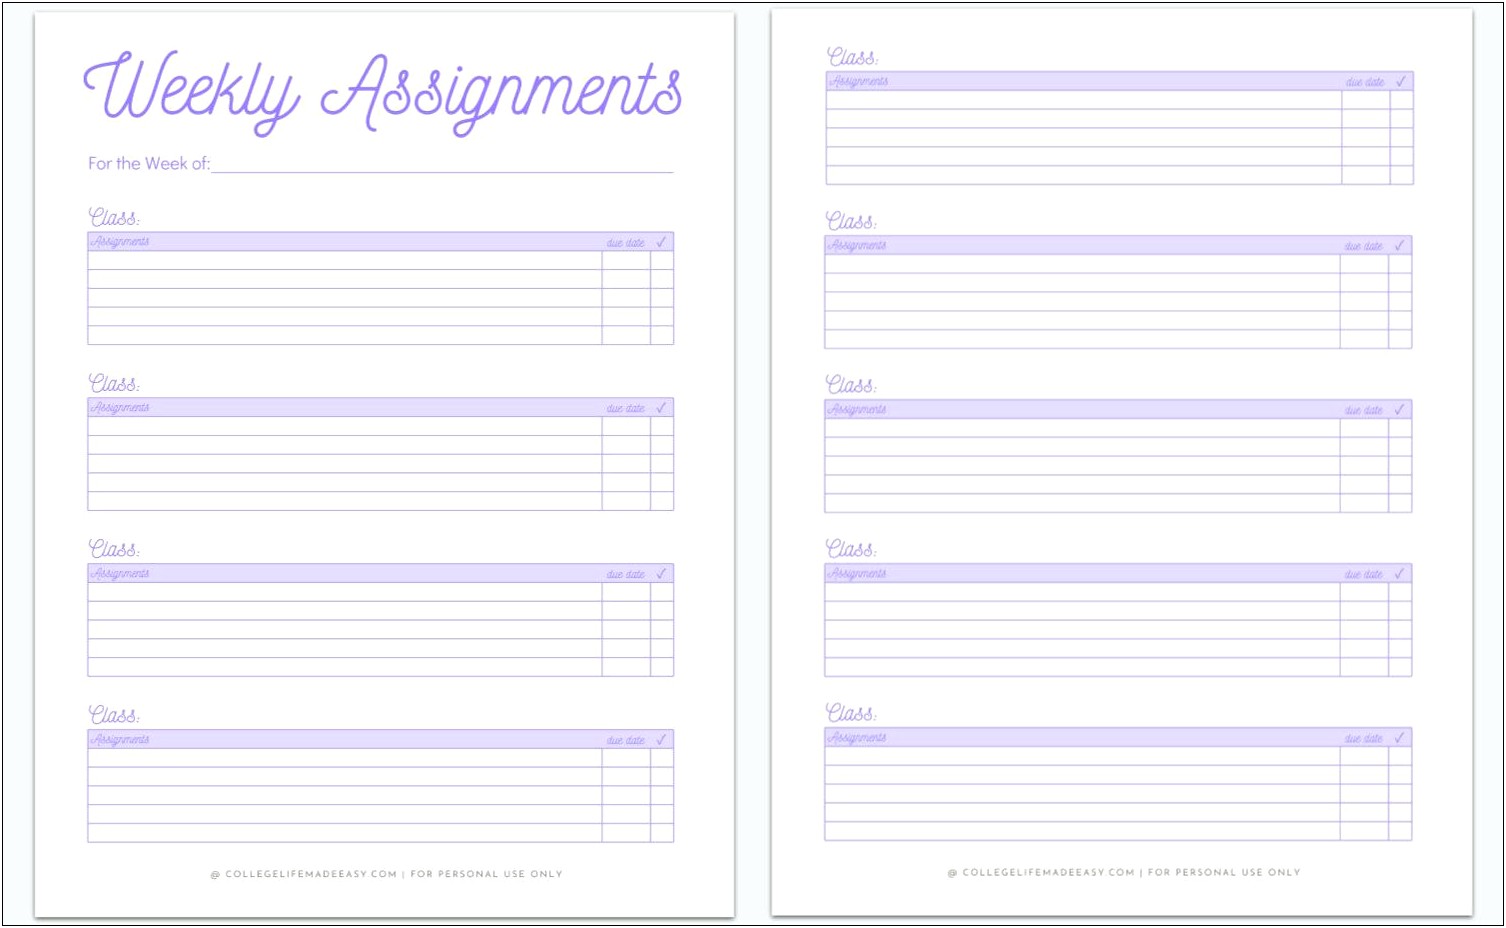 Daily Homework Assignment Sheet Template Free